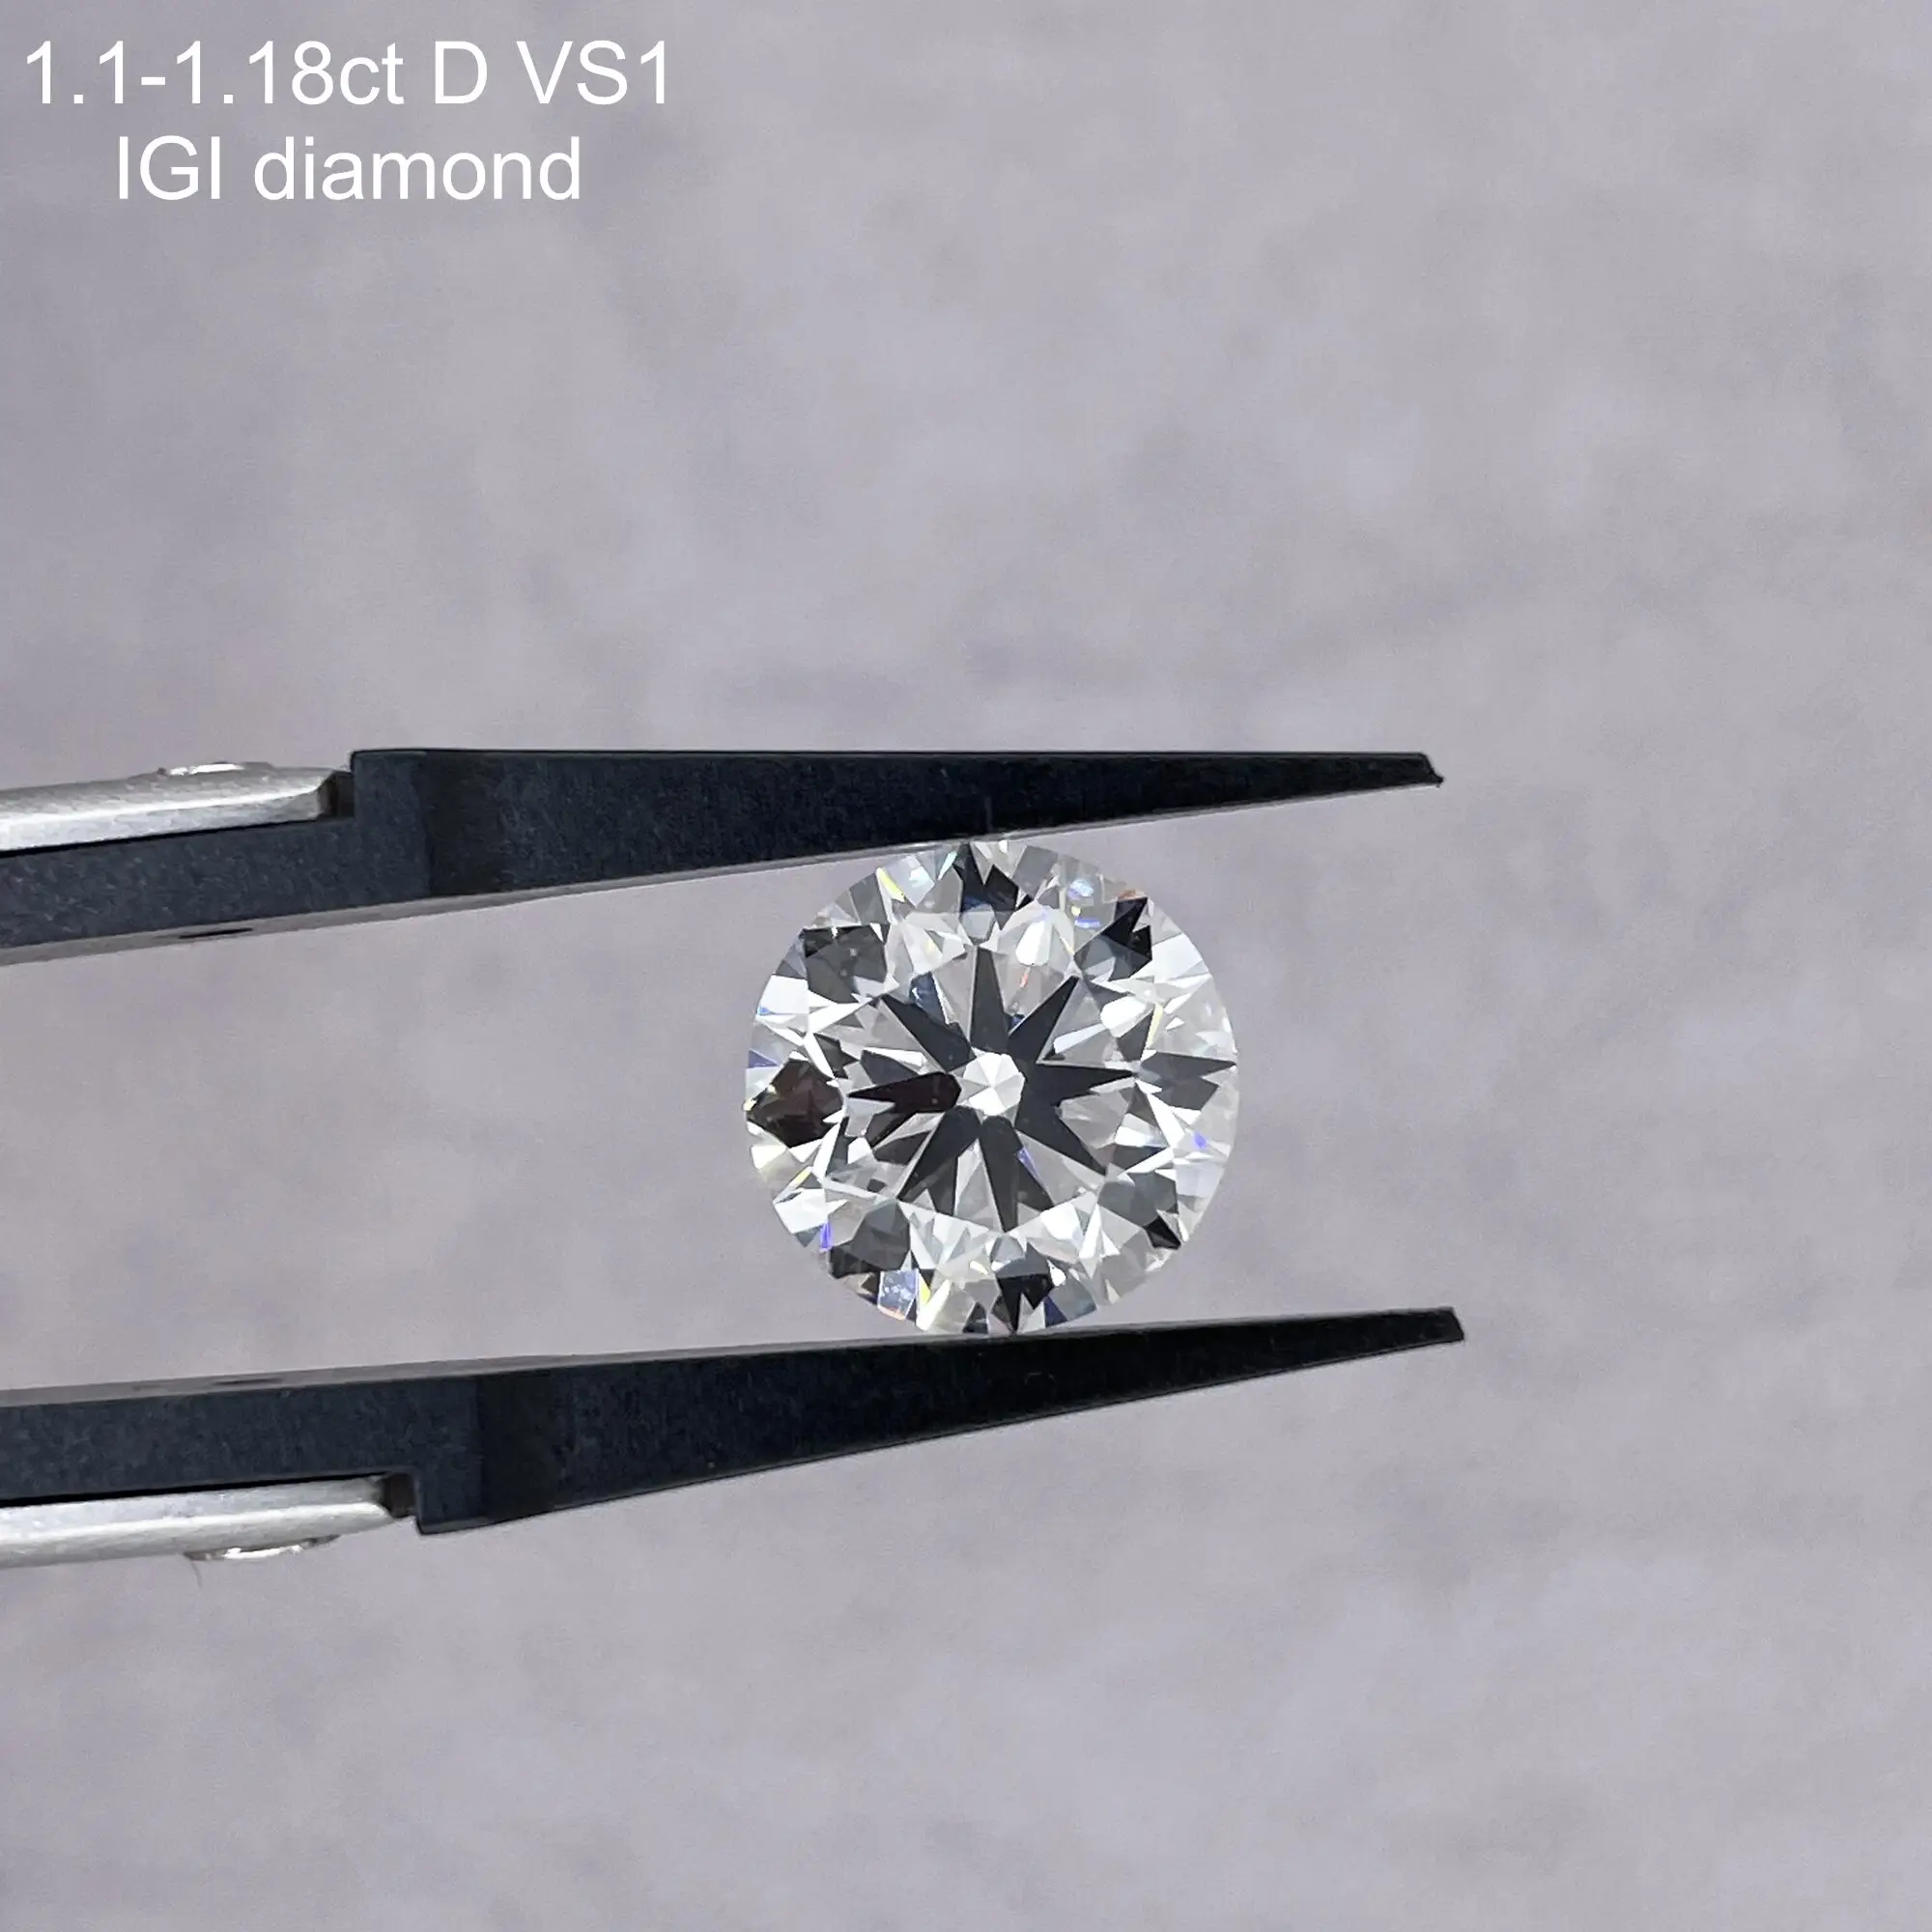 بسعر ممتاز HPHT 1.1ct D VS1 قطع مستديرة مختبرات IGI ناضجة شواء ماسي للبيع بالجملة الماس الصناعي